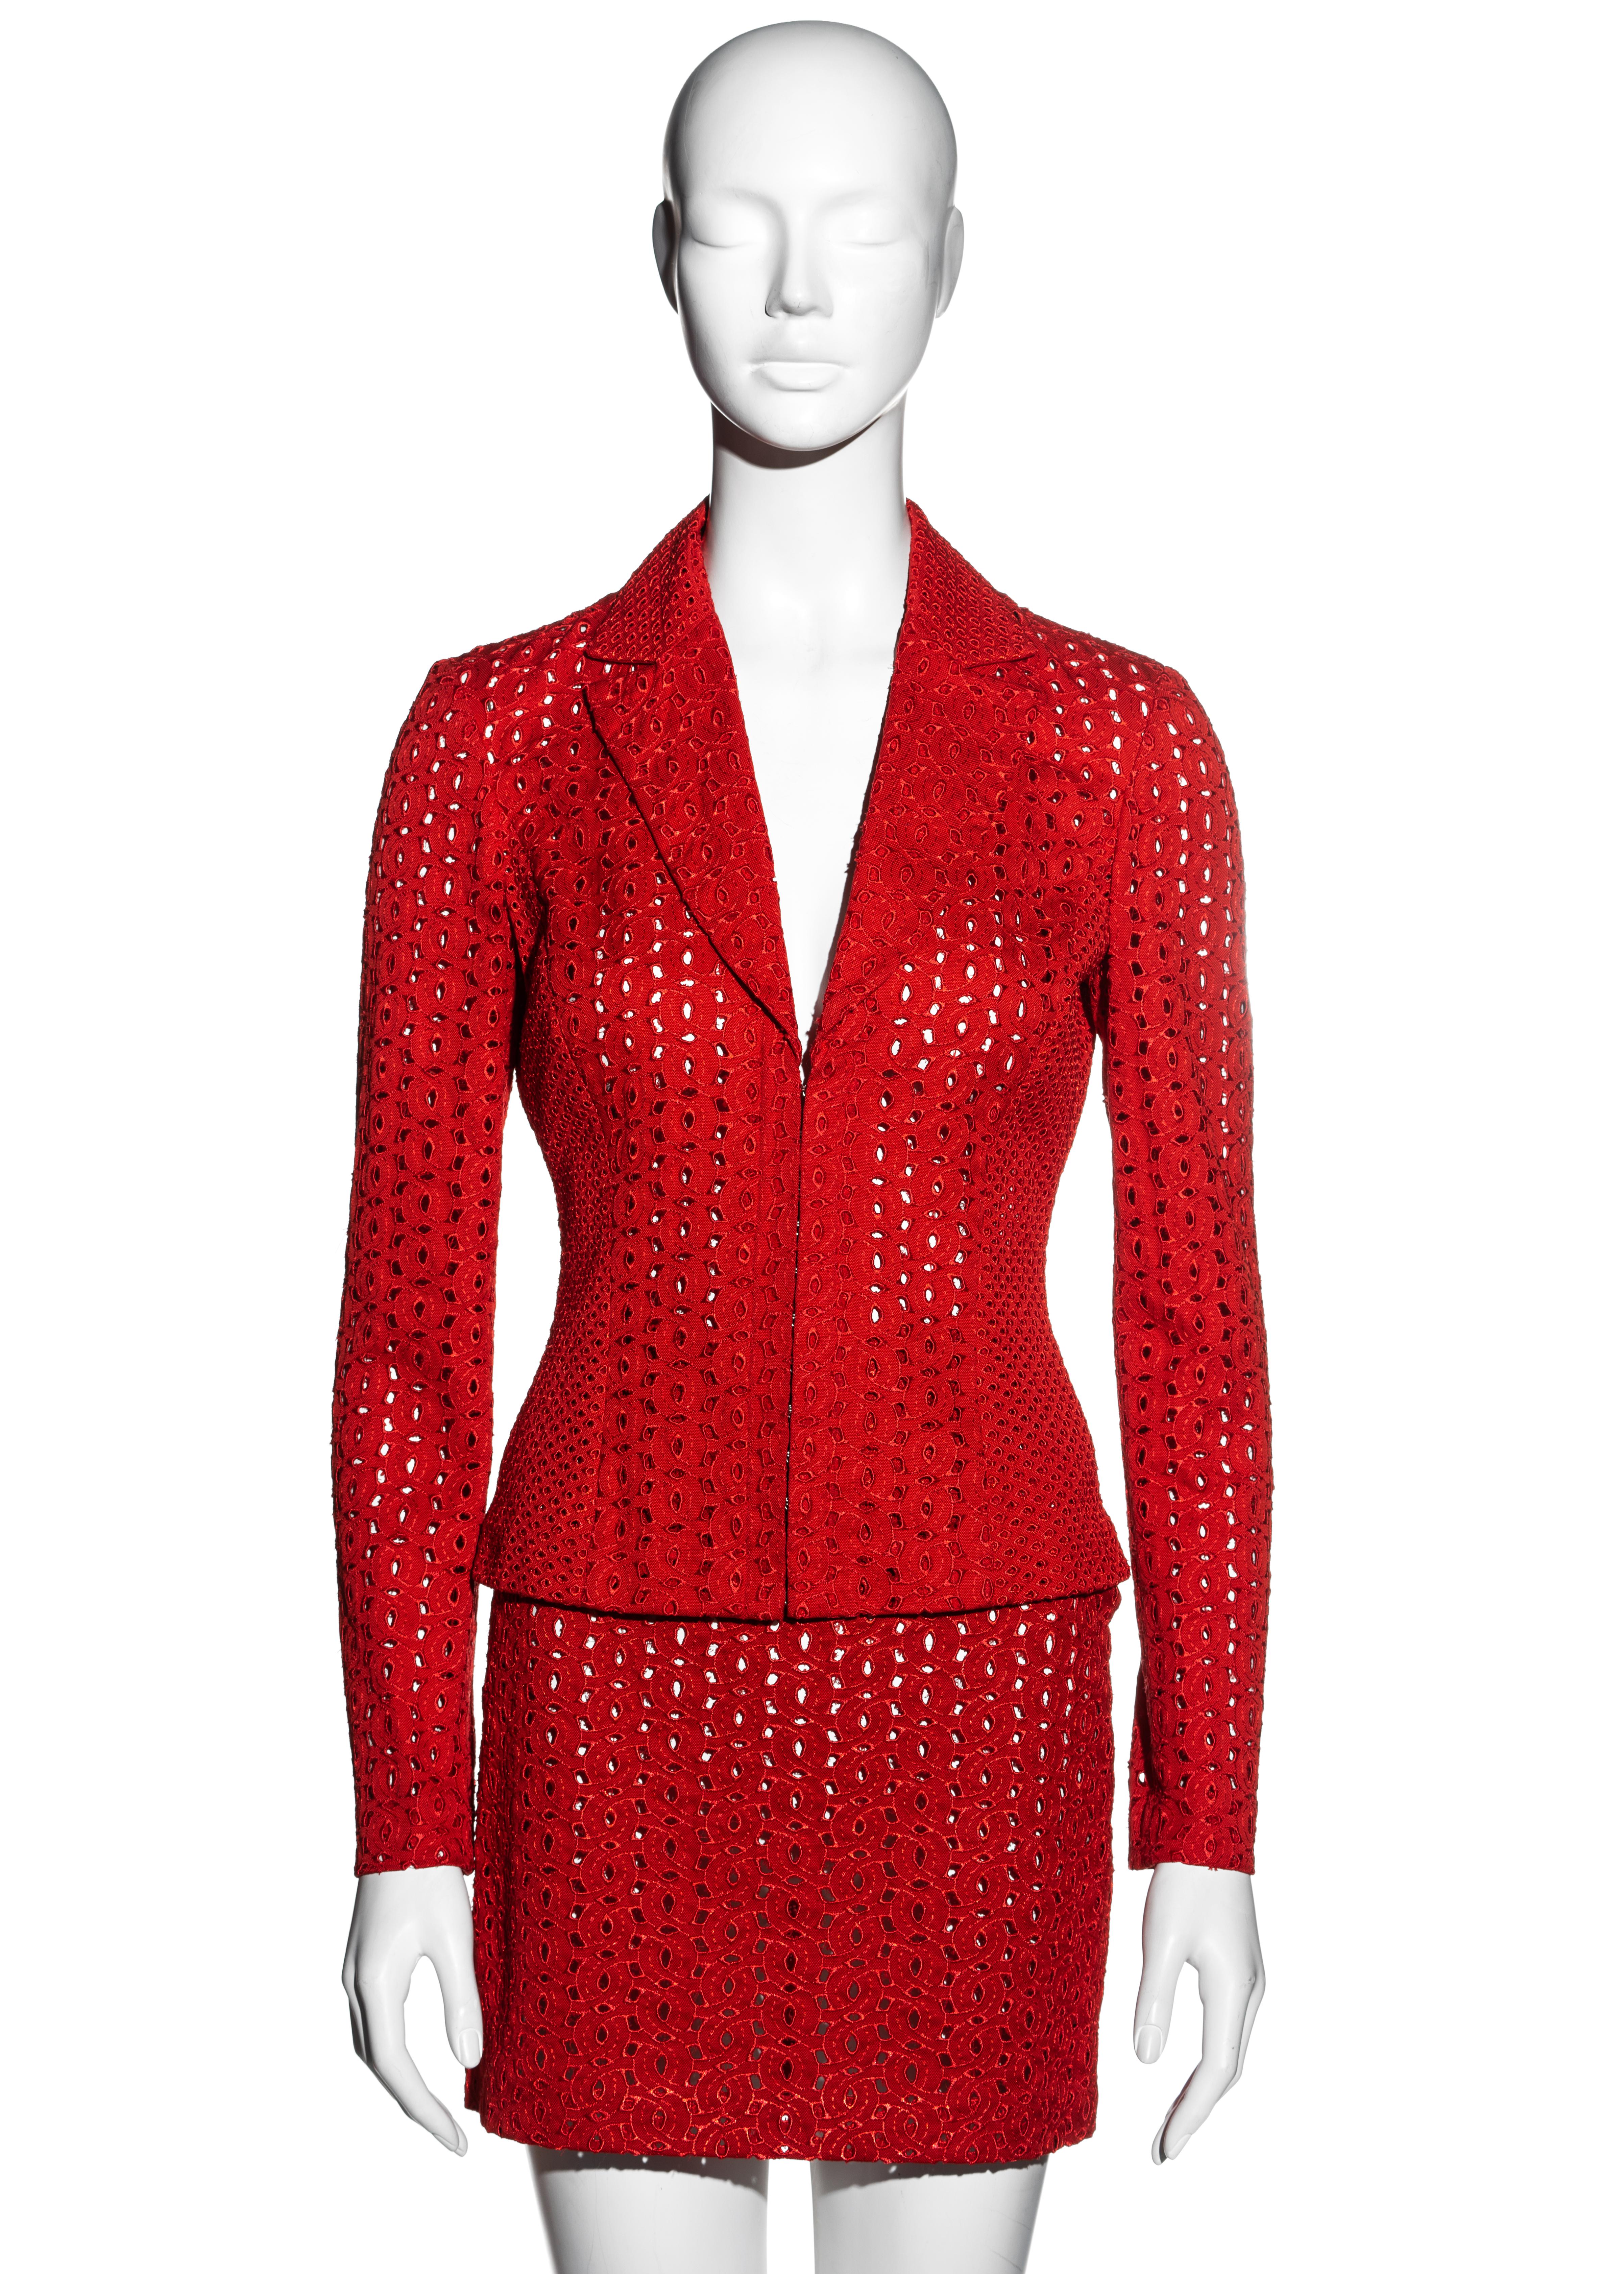 ▪ Gianni Versace tailleur mini-jupe en coton rouge
▪ Technique de découpage
▪ Veste cintrée avec crochets métalliques pour corset 
▪ Mini jupe taille haute 
IT 40 - FR 36 - UK 8 - US 4
▪ Printemps-été 2002 